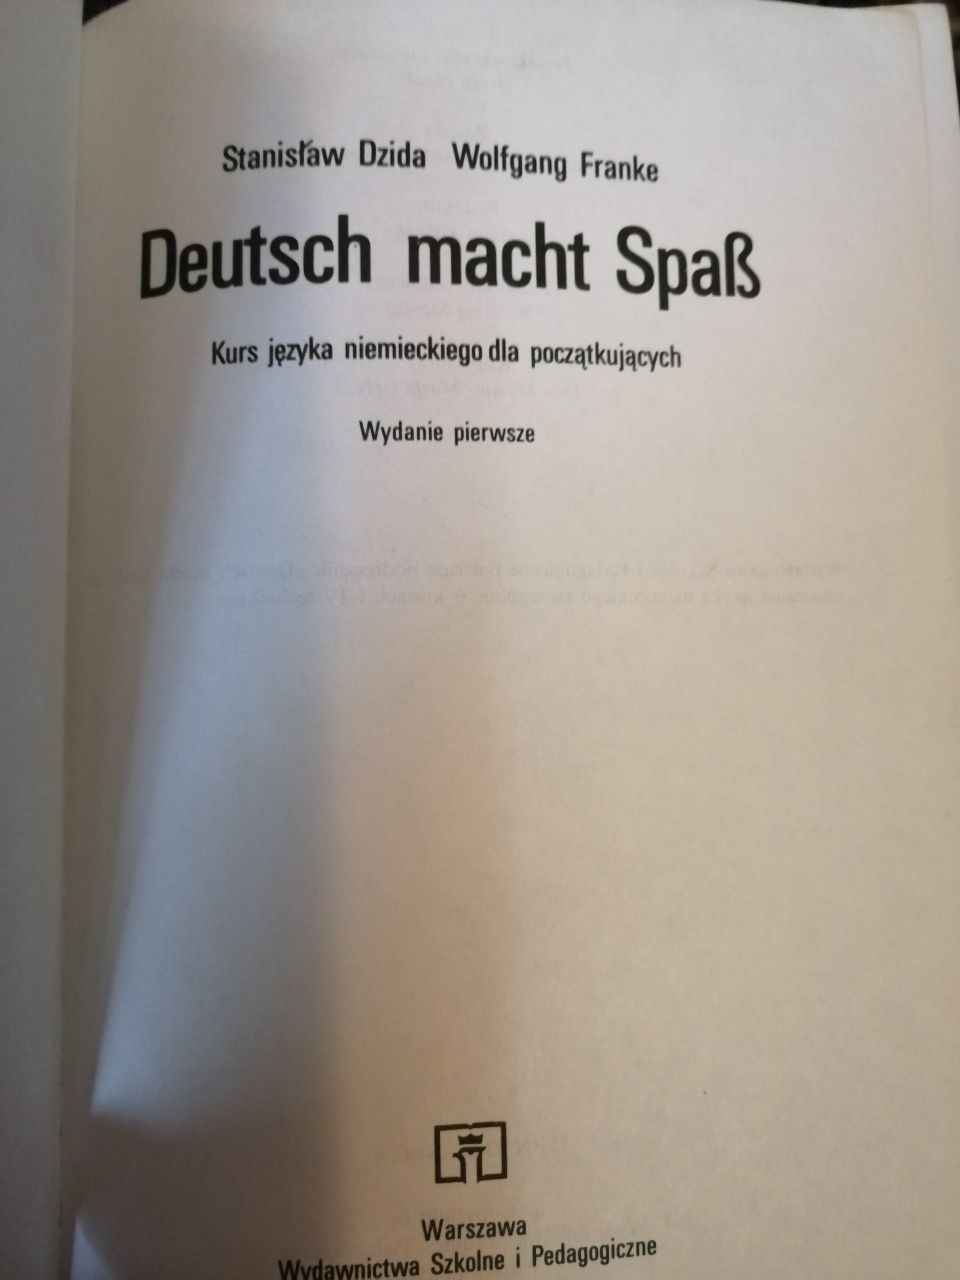 Deutsch macht spaB - książka - kurs języka dla poczatkujacych